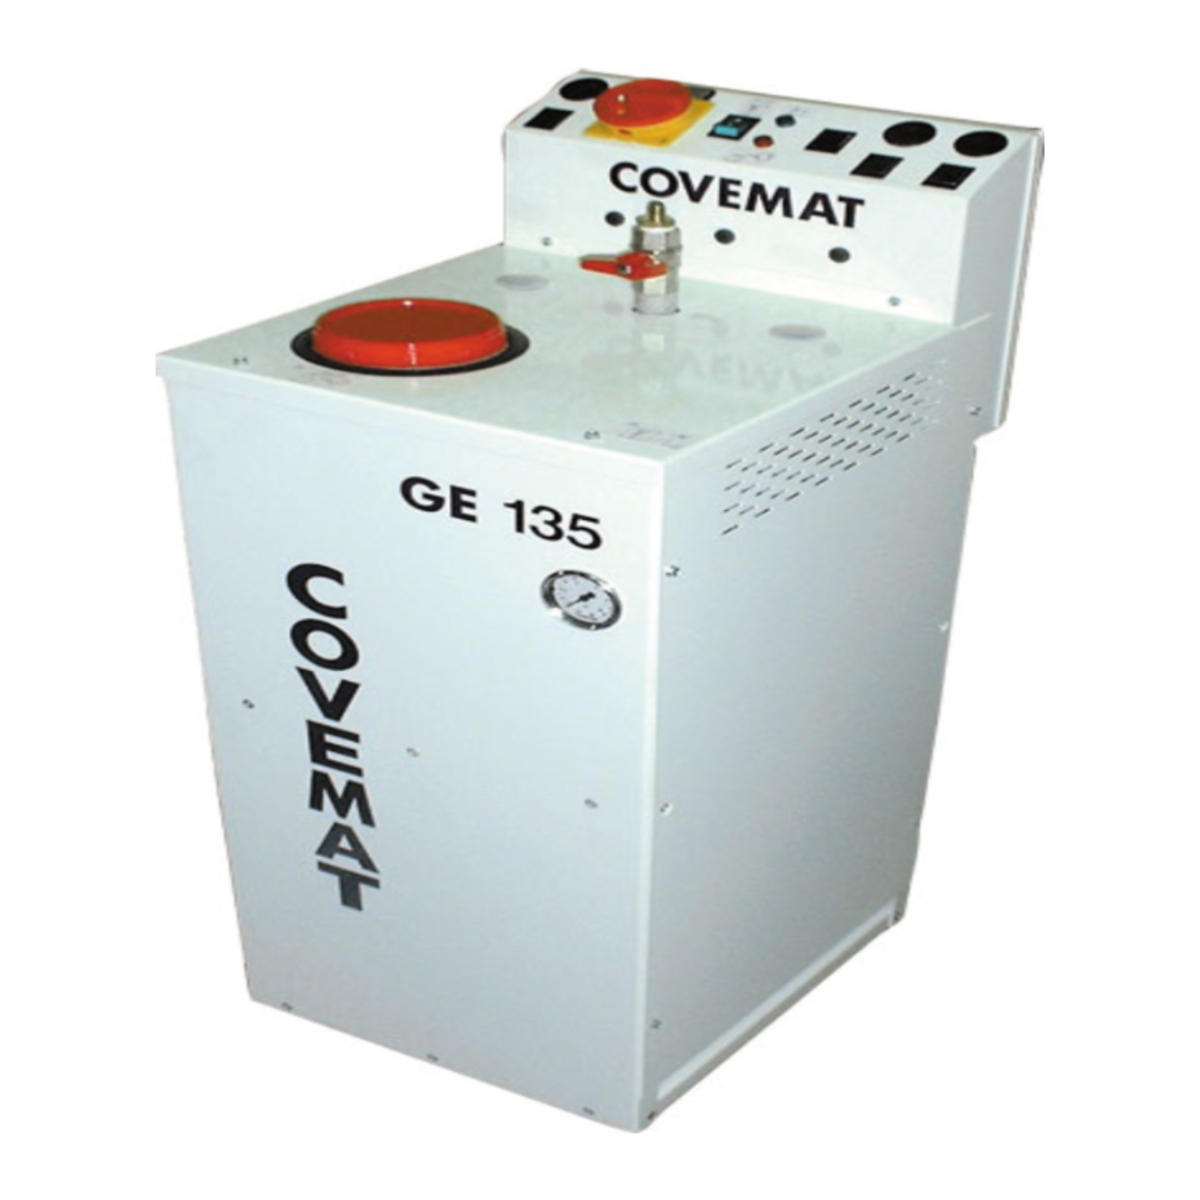 Générateur vapeur à remplissage semi automatique Covemat GE 135